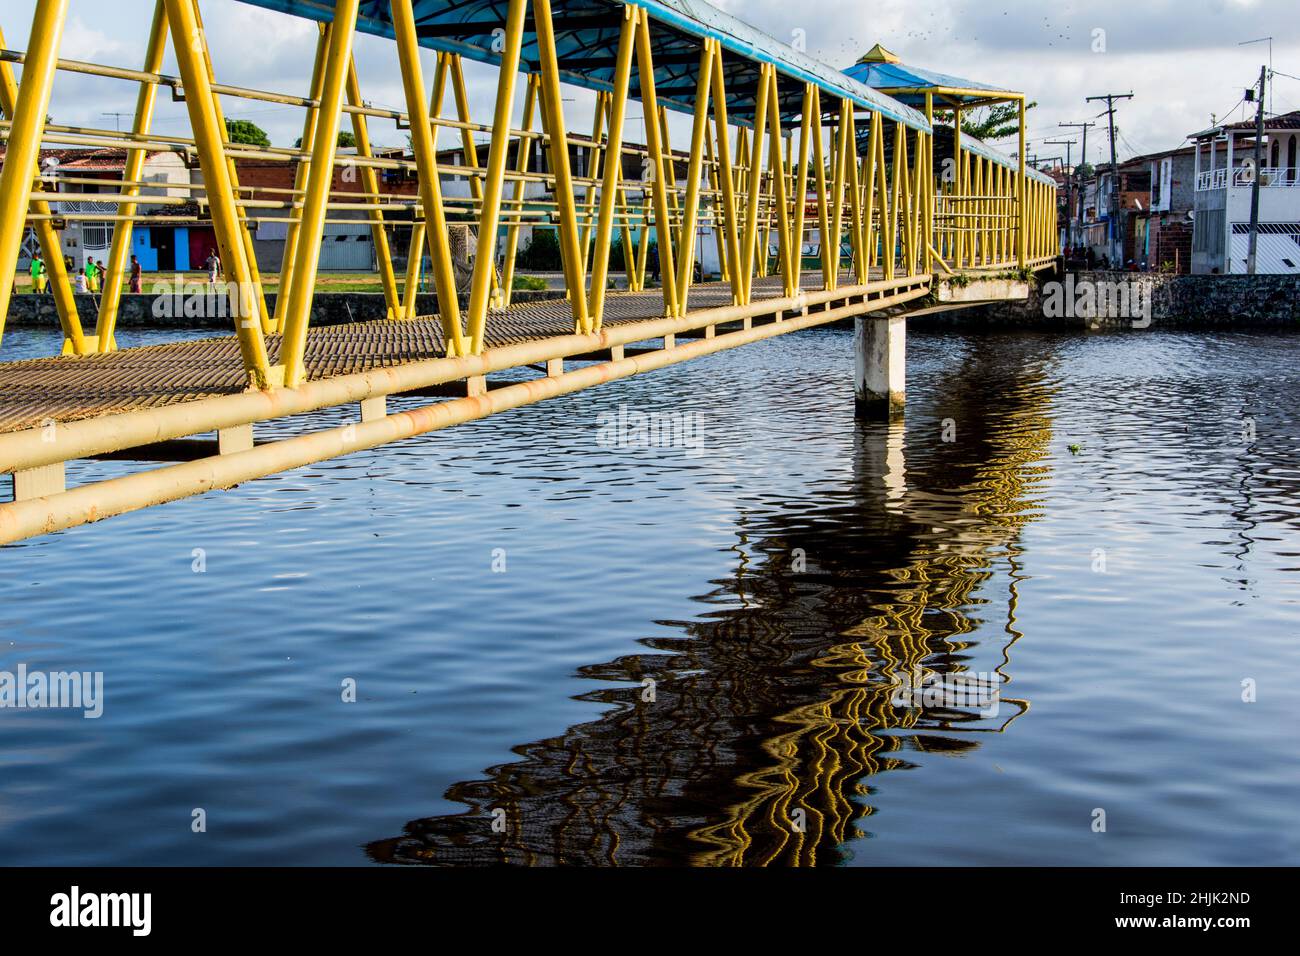 Passerella pedonale in ferro sopra un fiume in giallo e blu. Riflessione in acqua. Foto Stock